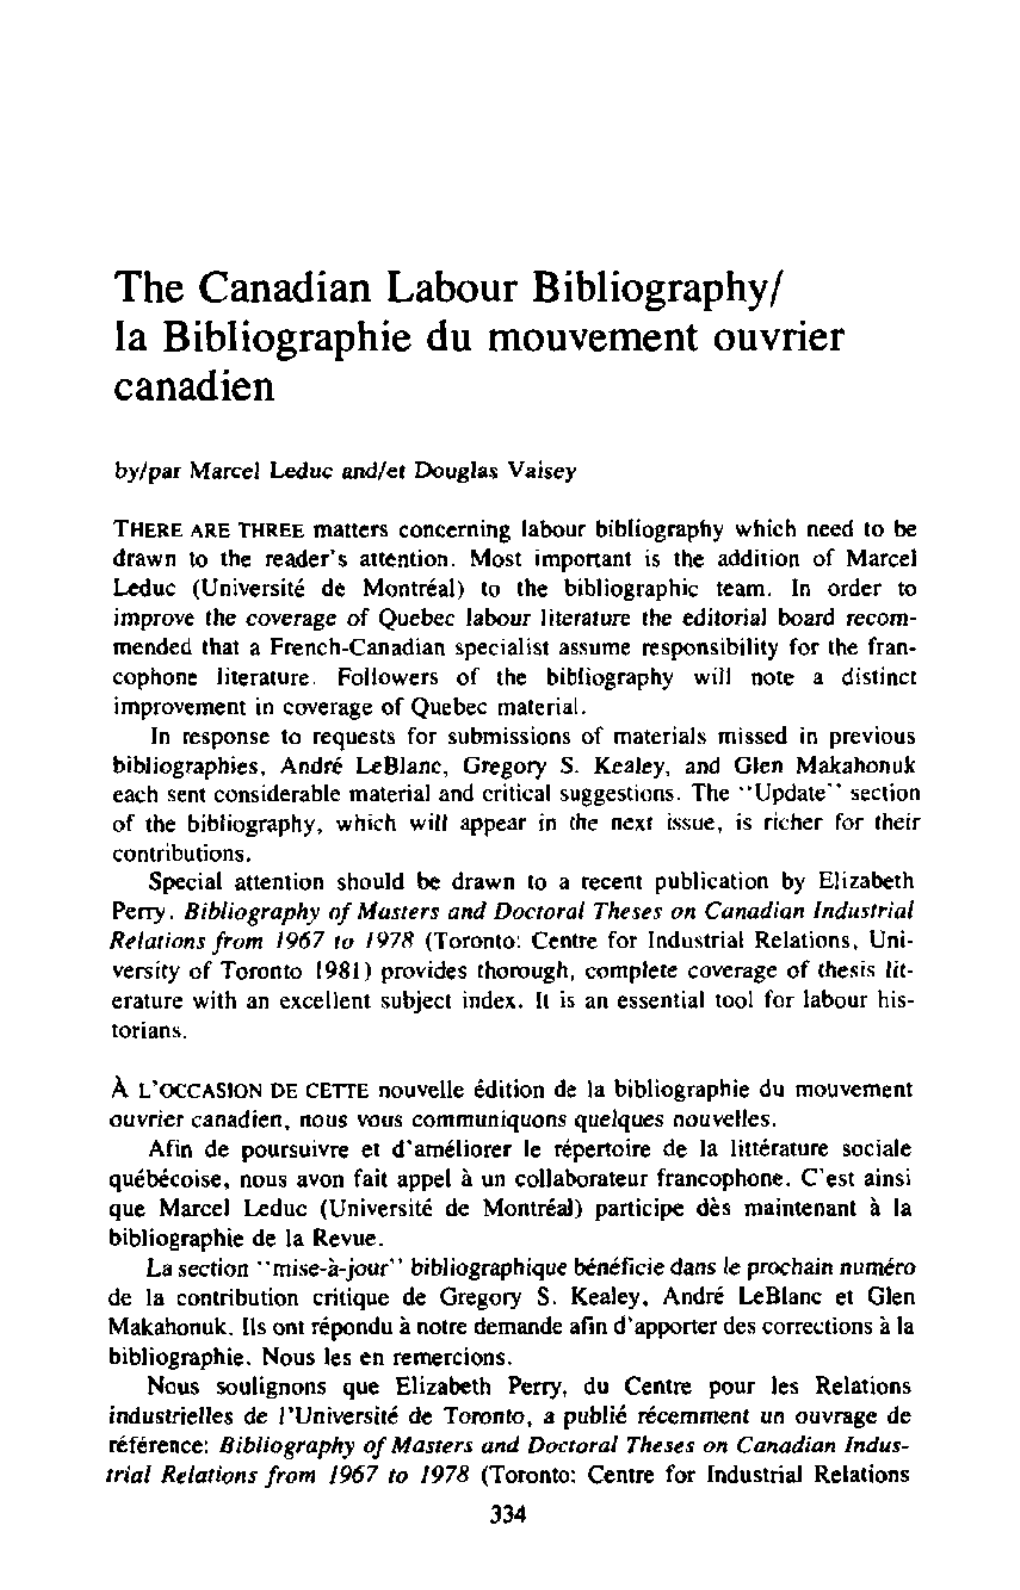 The Canadian Labour Bibliography/ La Bibliographic Du Mouvement Ouvrier Canadien